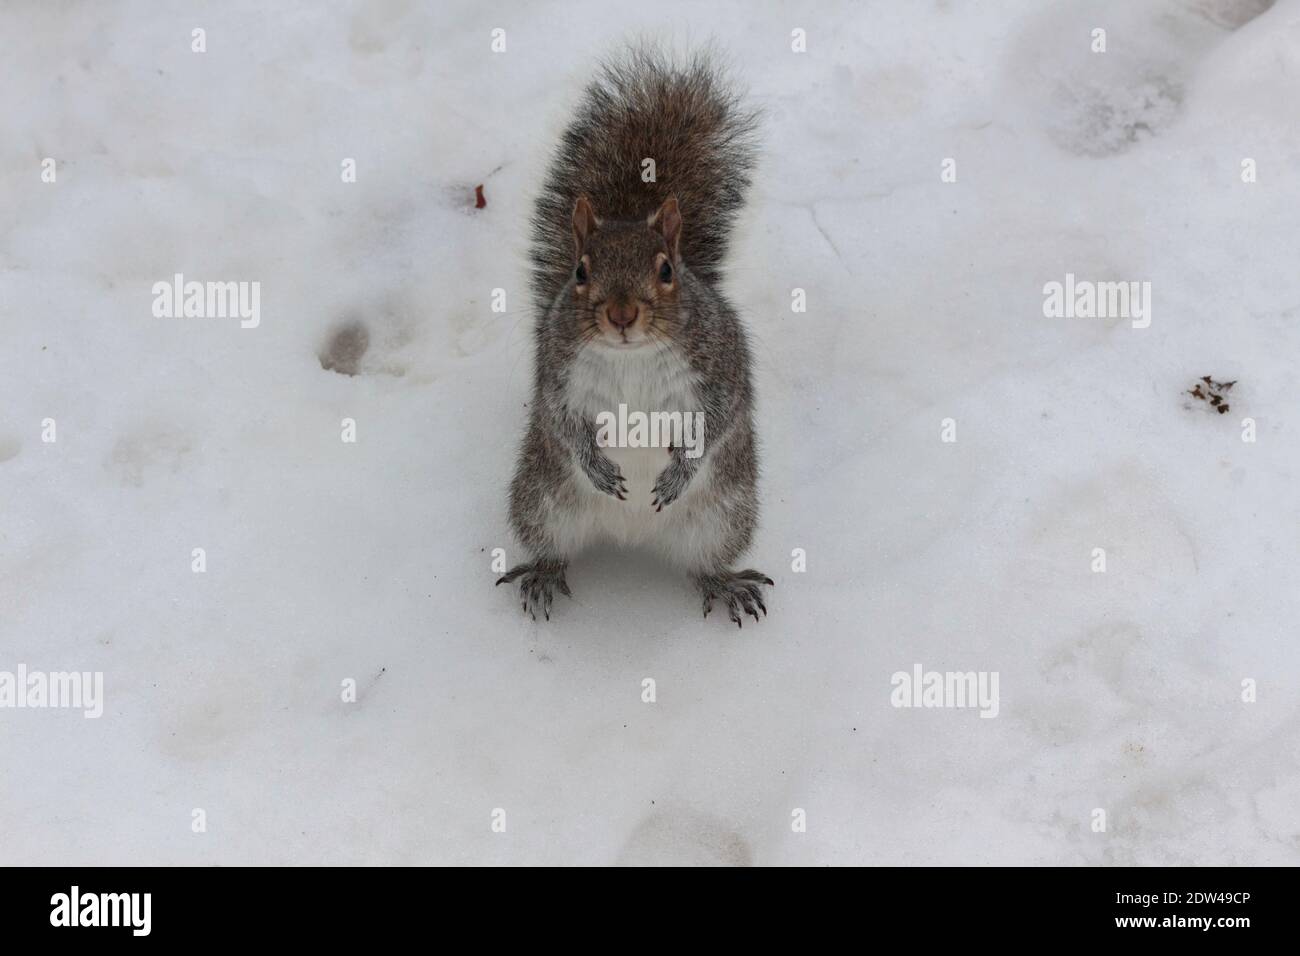 un écureuil gris est assis sur ses pattes arrière entourées de neige et regarde directement la caméra, aaaww……. Banque D'Images